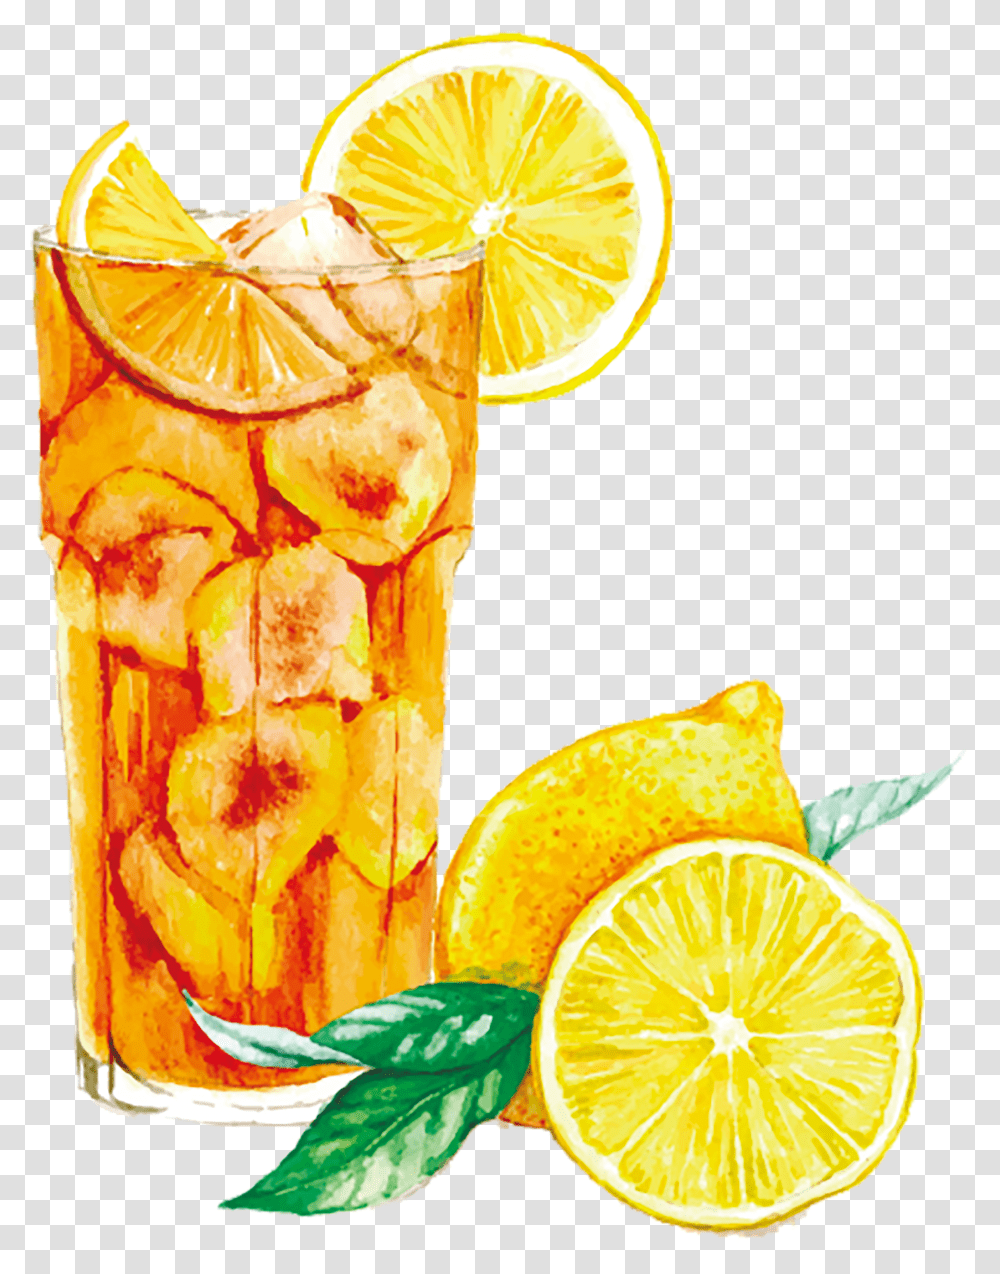 Download Watercolor Margarita Free Stock Orange Ice Tea Watercolor, Lemonade, Beverage, Drink, Citrus Fruit Transparent Png